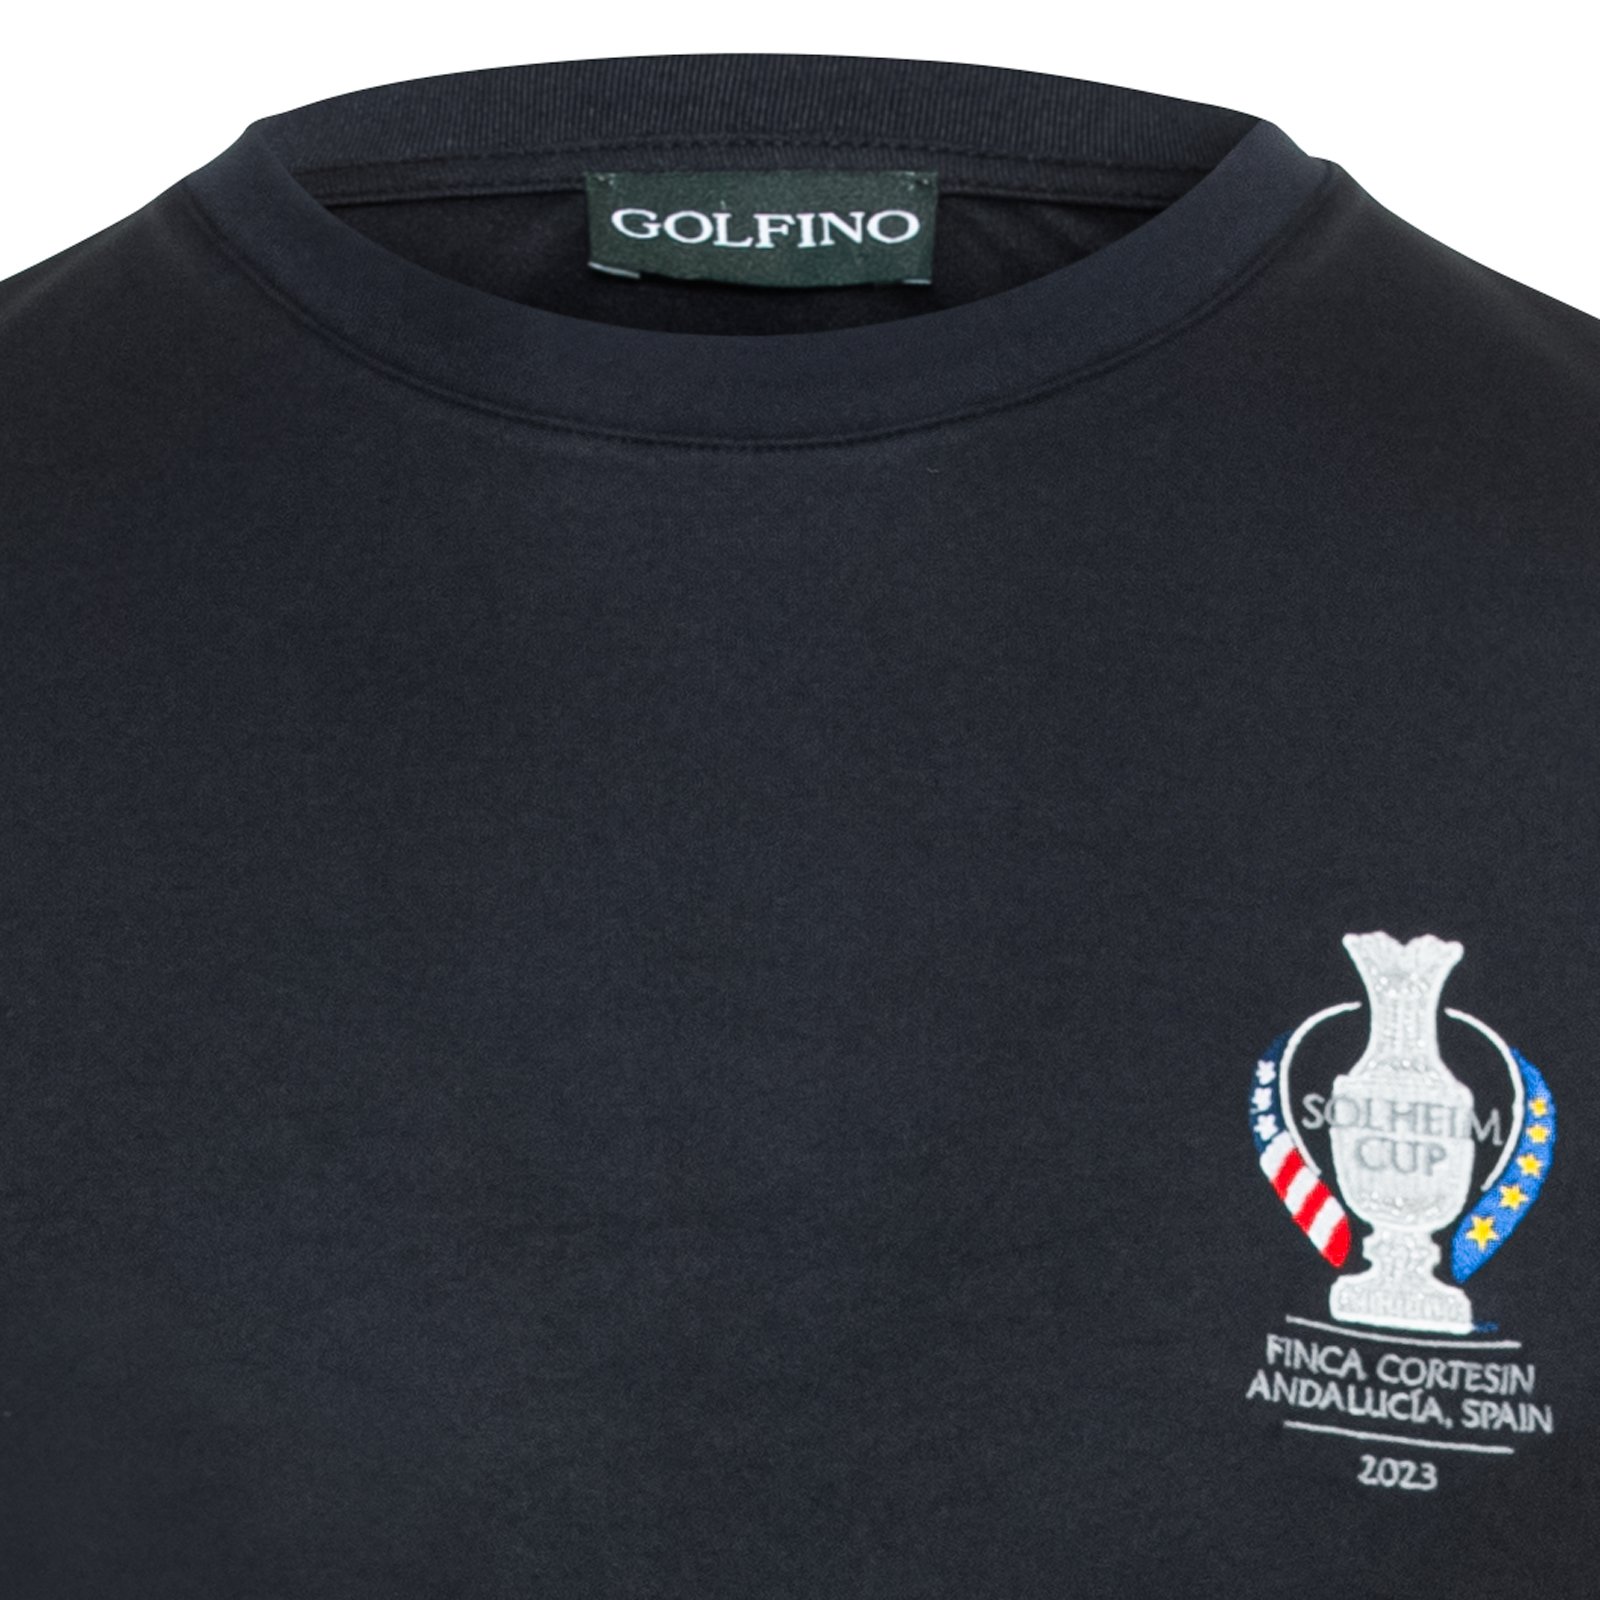 Softes Golf T-Shirt mit Sonnenschutz im Solheim Cup Design